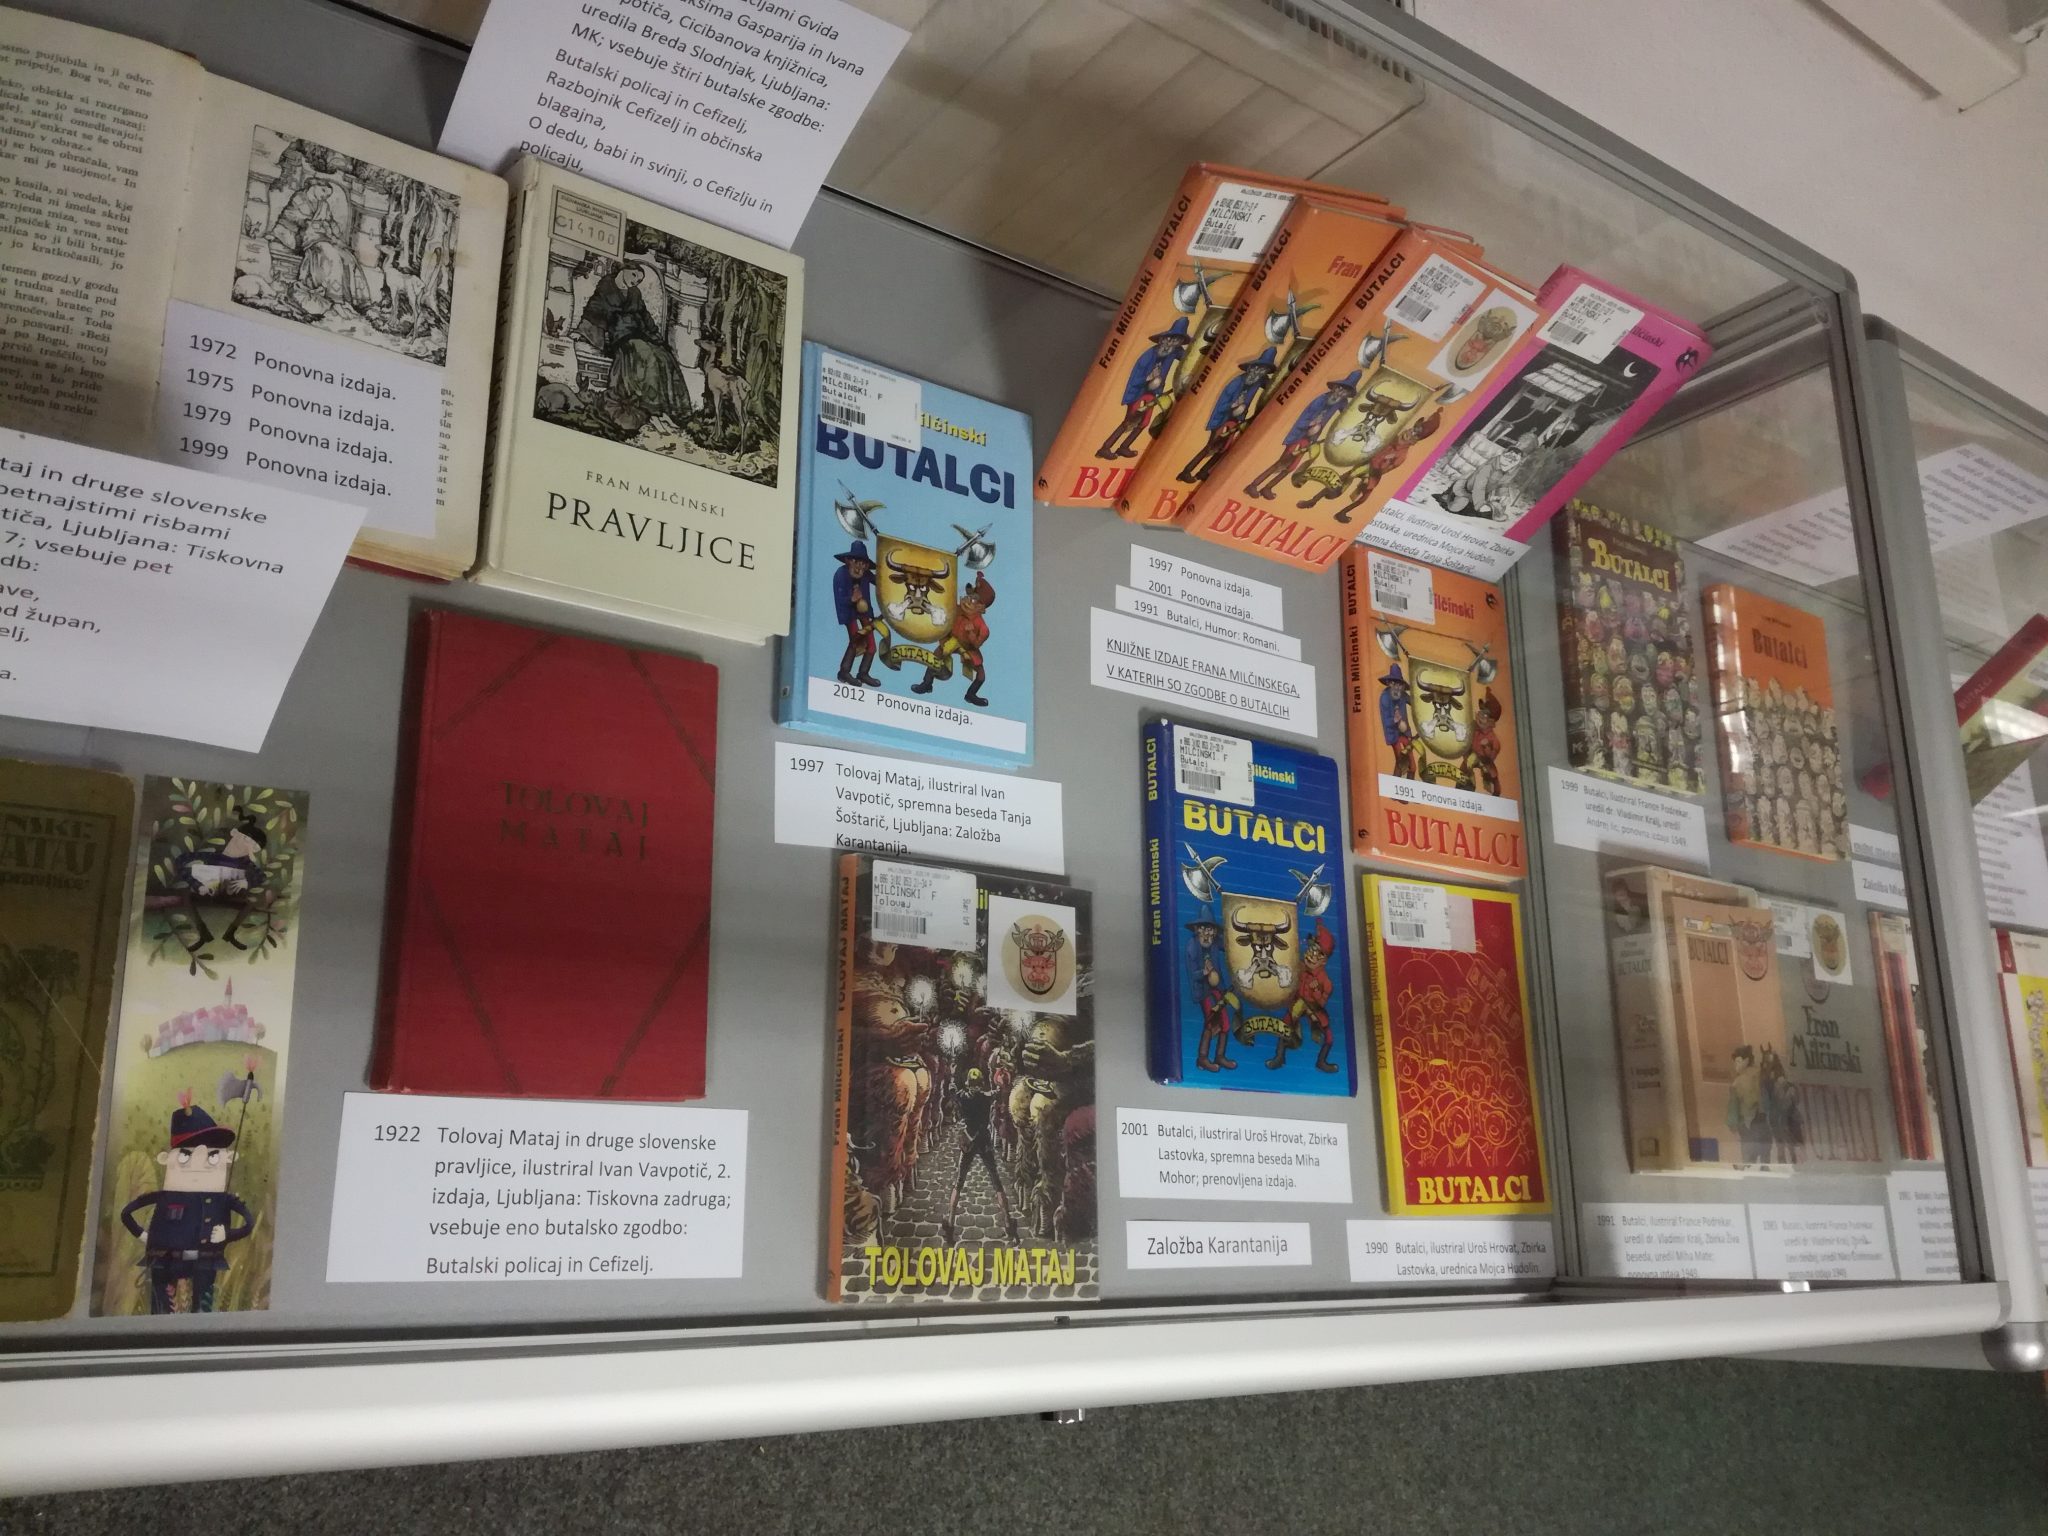 IMG 20170928 194607 - Butalci - razstava knjižnih izdaj ob 150-letnici rojstva Frana Milčinskega